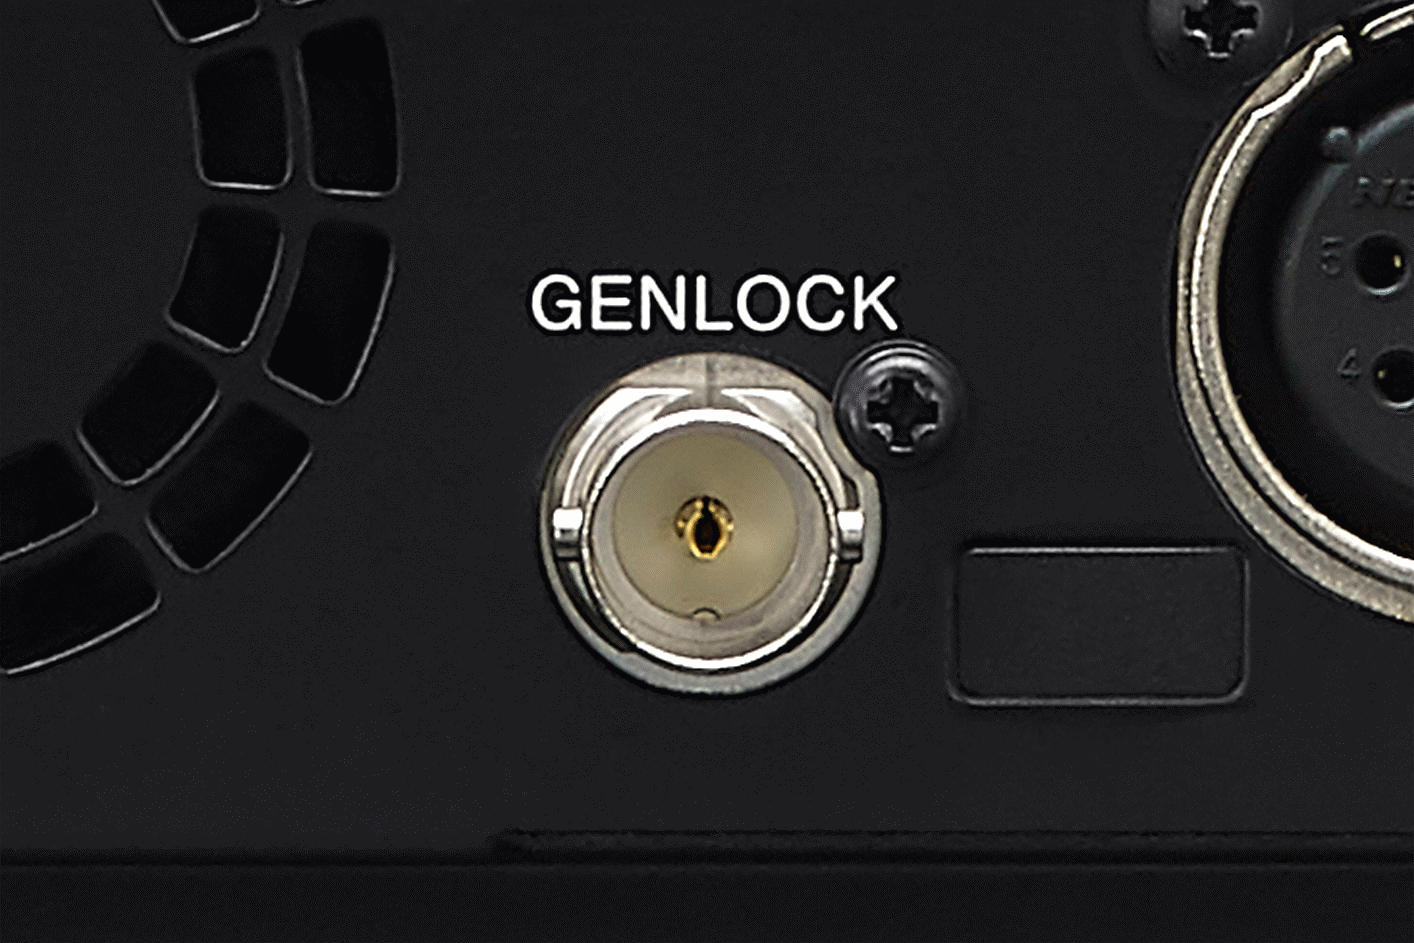 Προϊοντική εικόνα FR7, με την υποδοχή GENLOCK